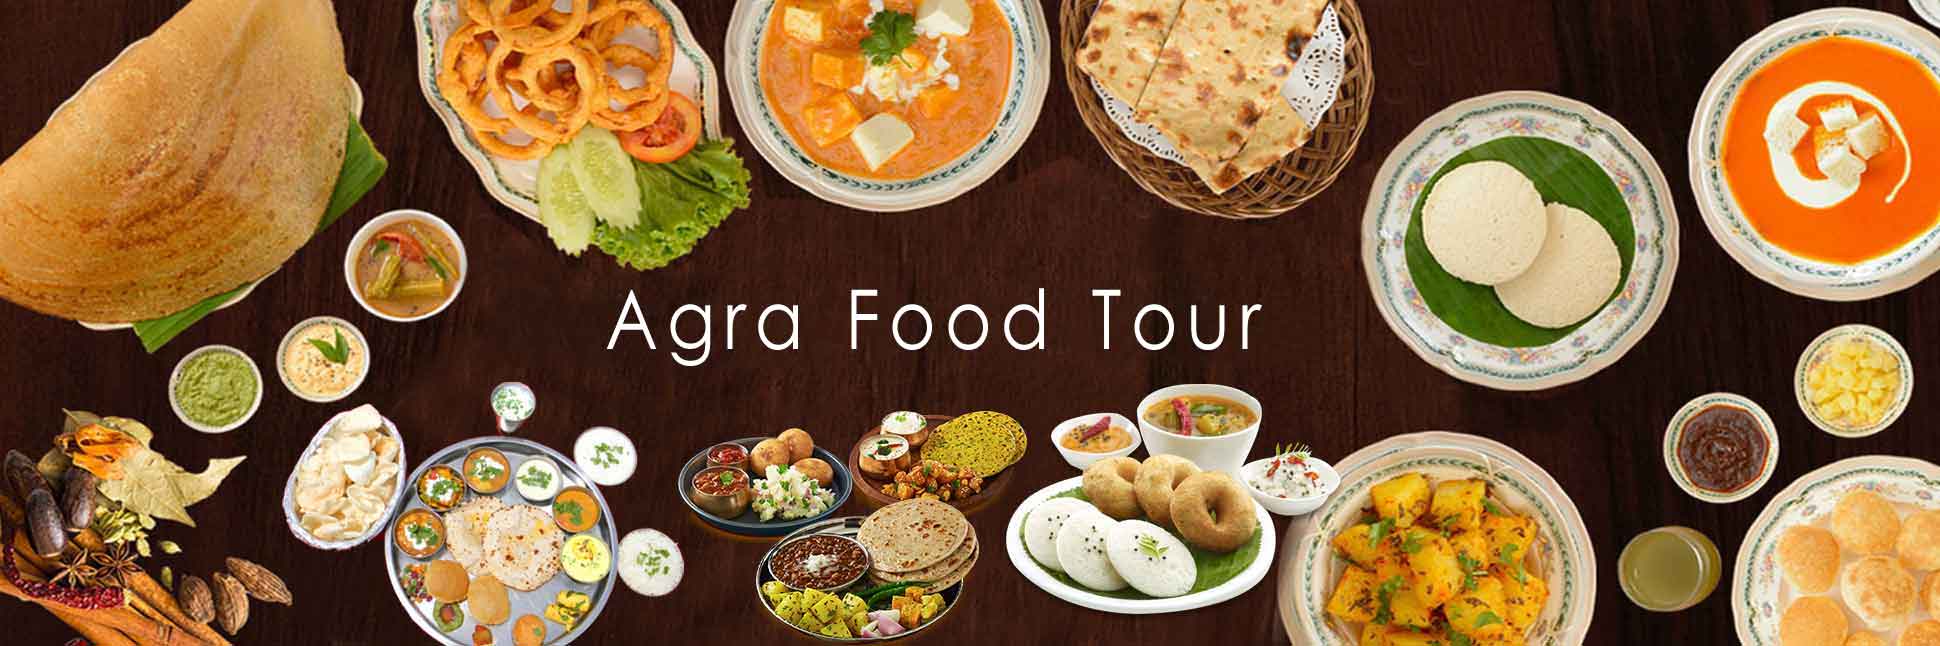 Agra Food Tour